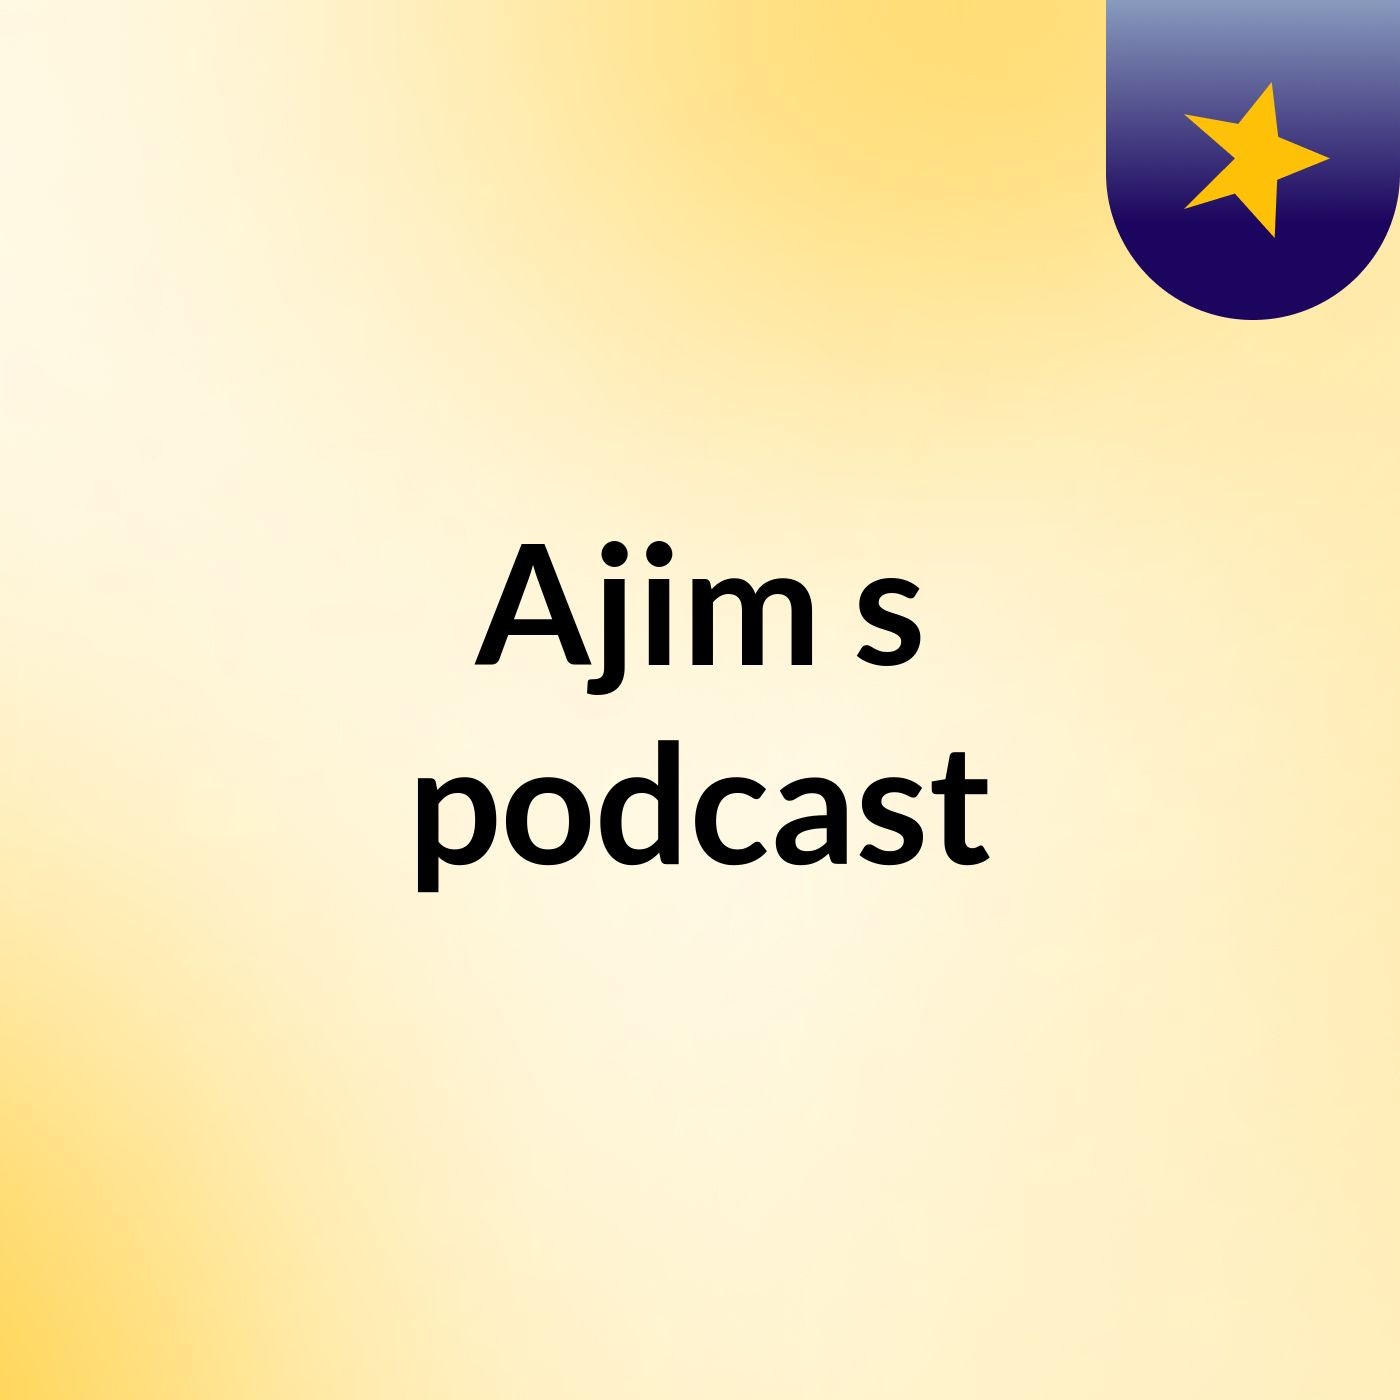 Ajim's podcast